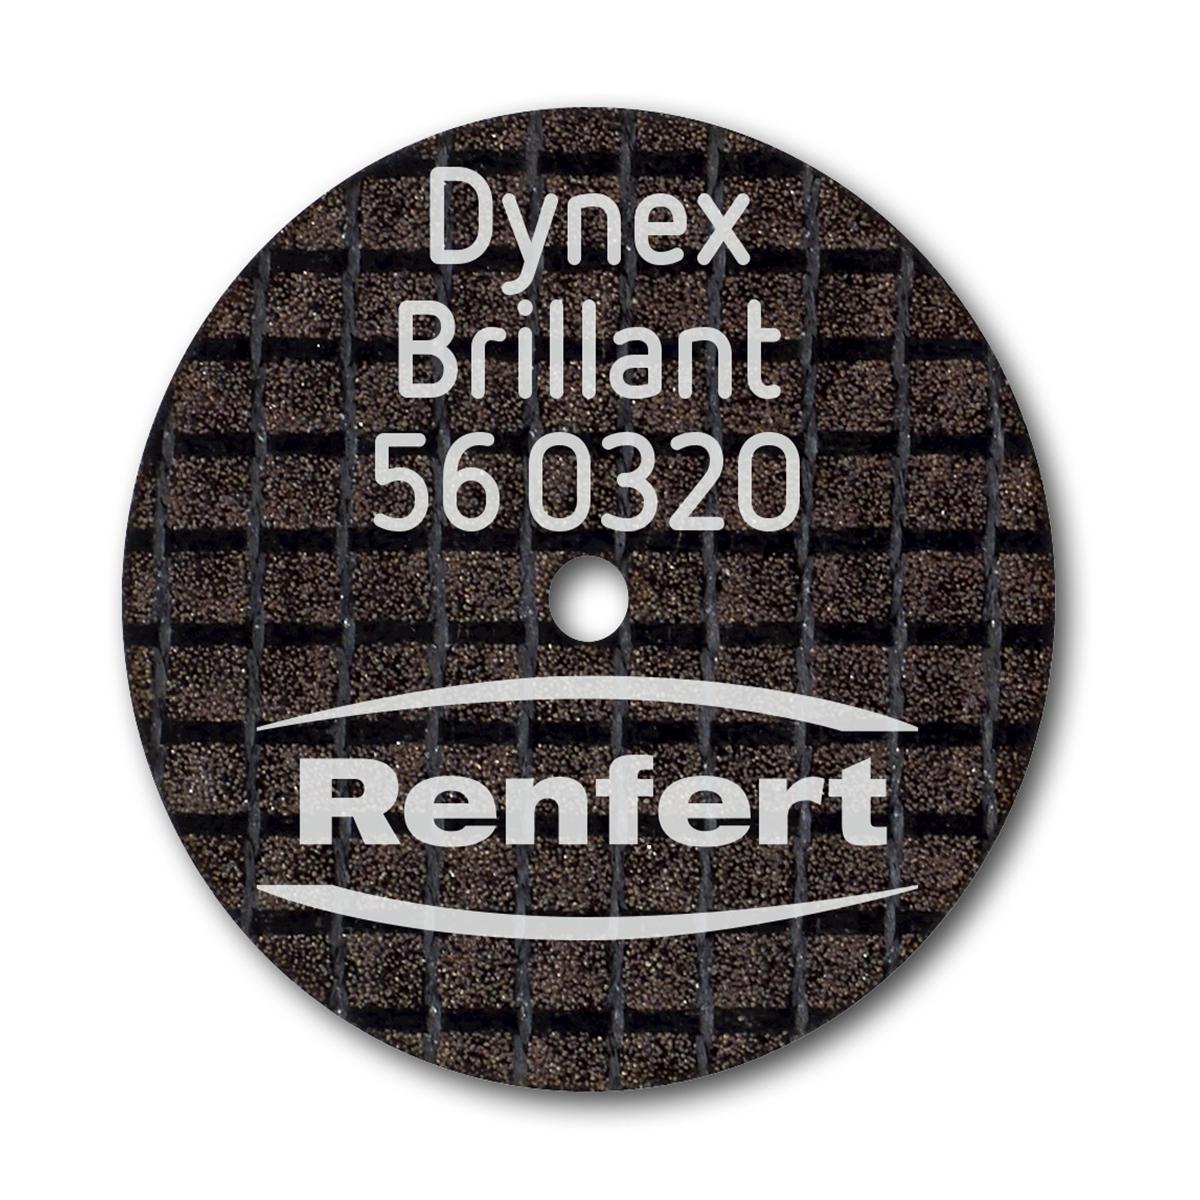 Dynex Brillant Trennscheibe - Ø 20 mm, Stärke 0,3 mm, Packung 10 Stück